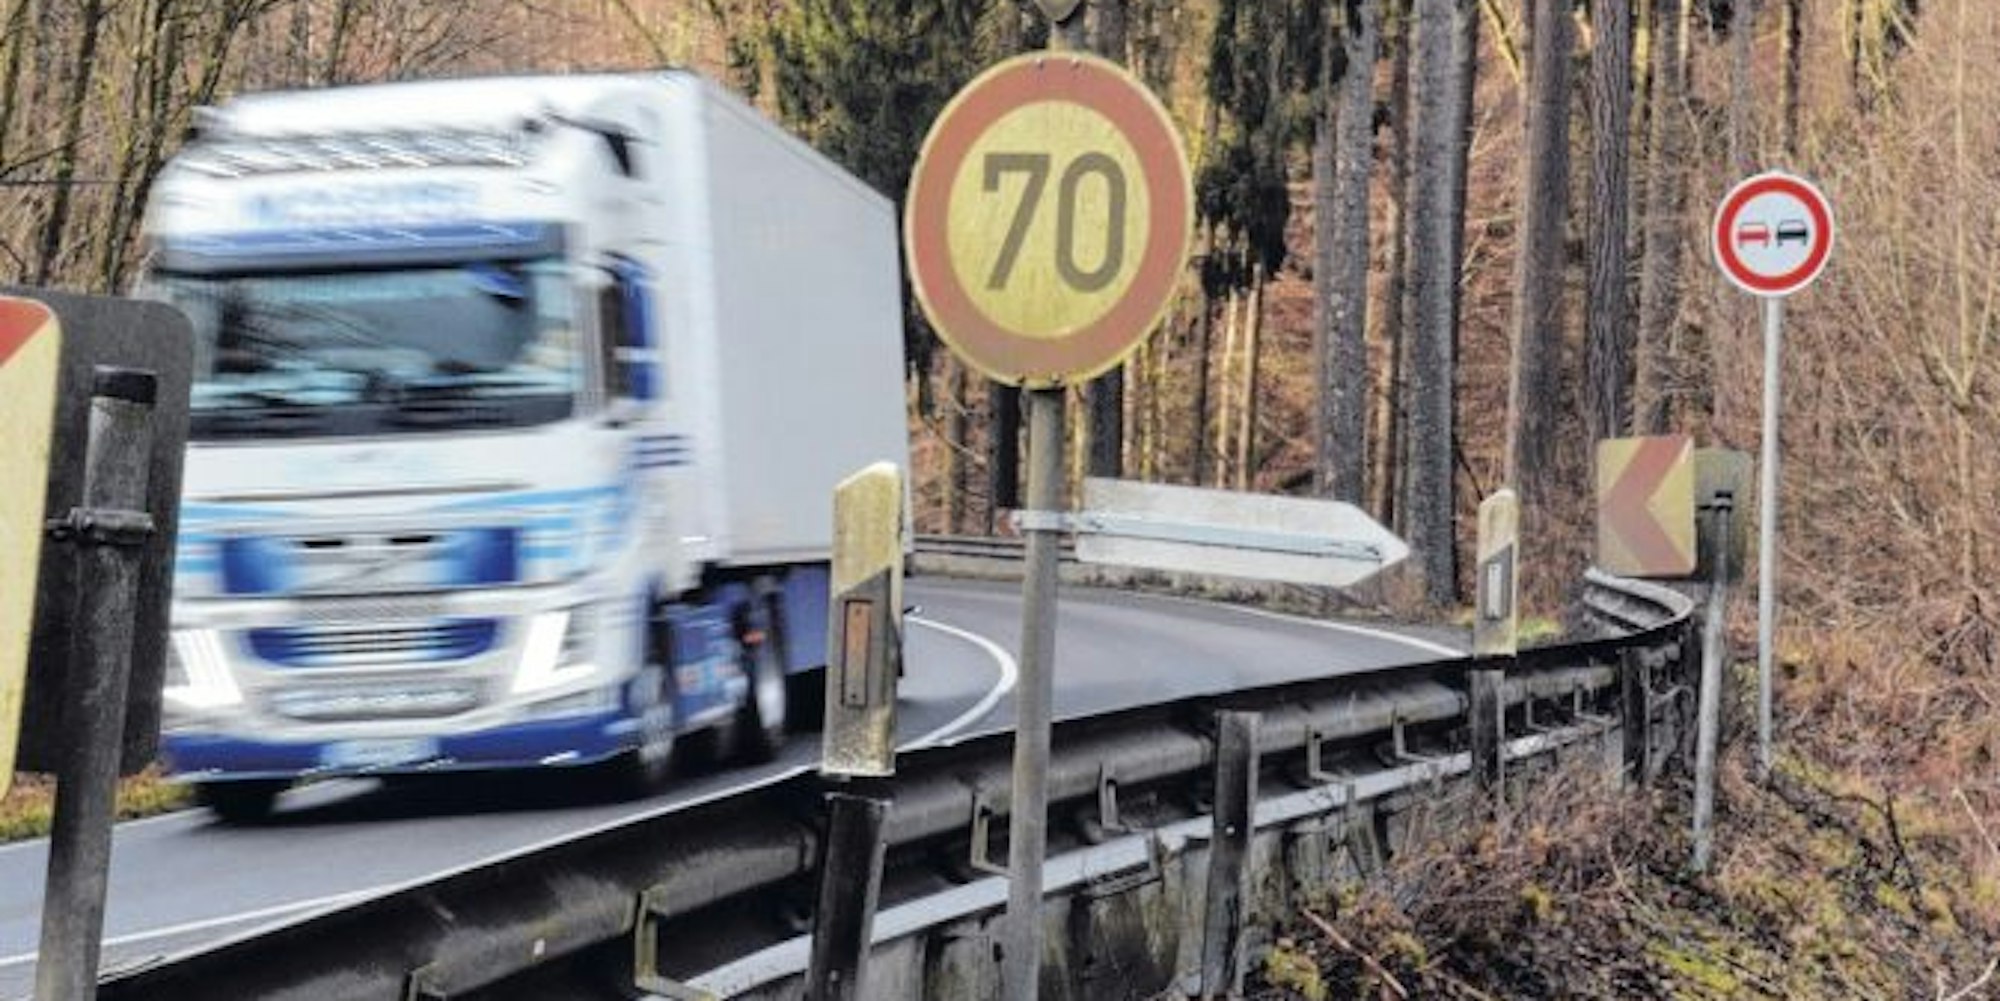 Tempo 70 gilt auf der B 478 im Rhein-Sieg-Kreis ebenso wie ein Überholverbot.